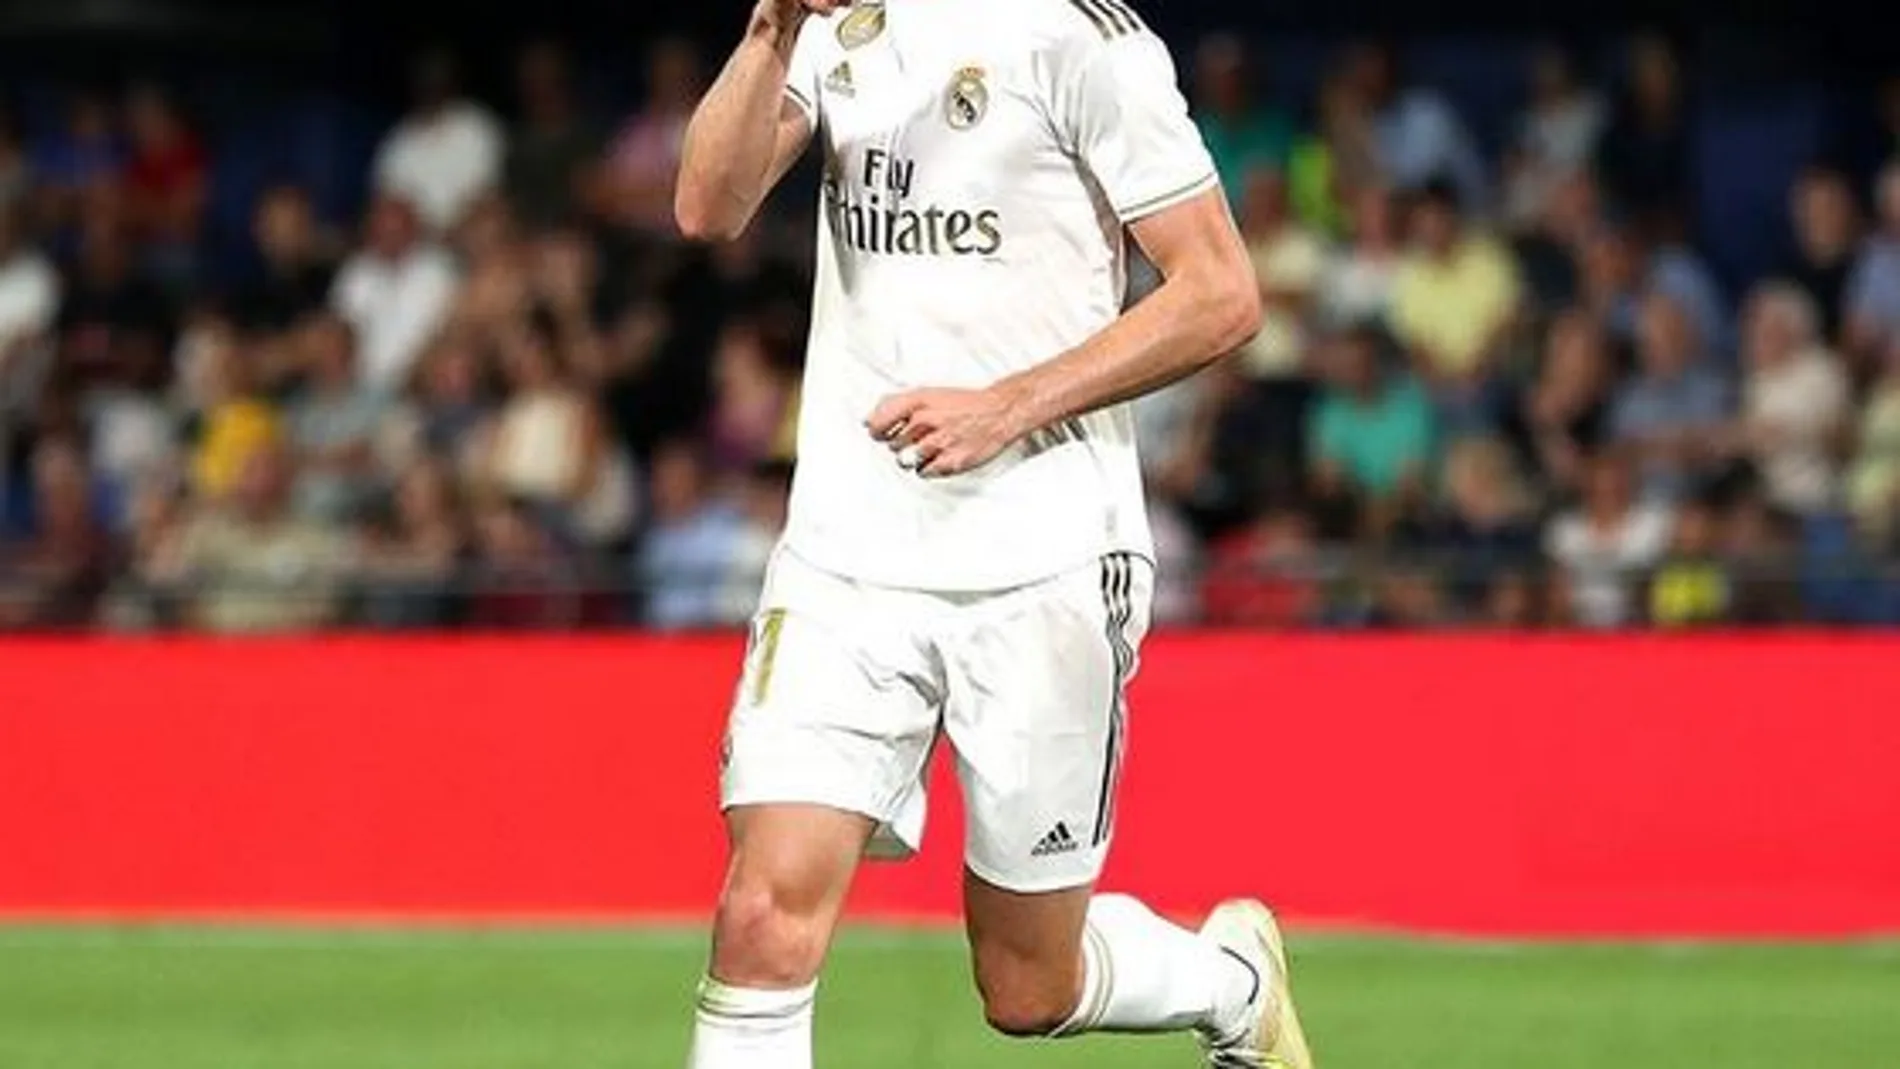 Fotomontaje de Doncic con la elástica del Real Madrid de fútbol